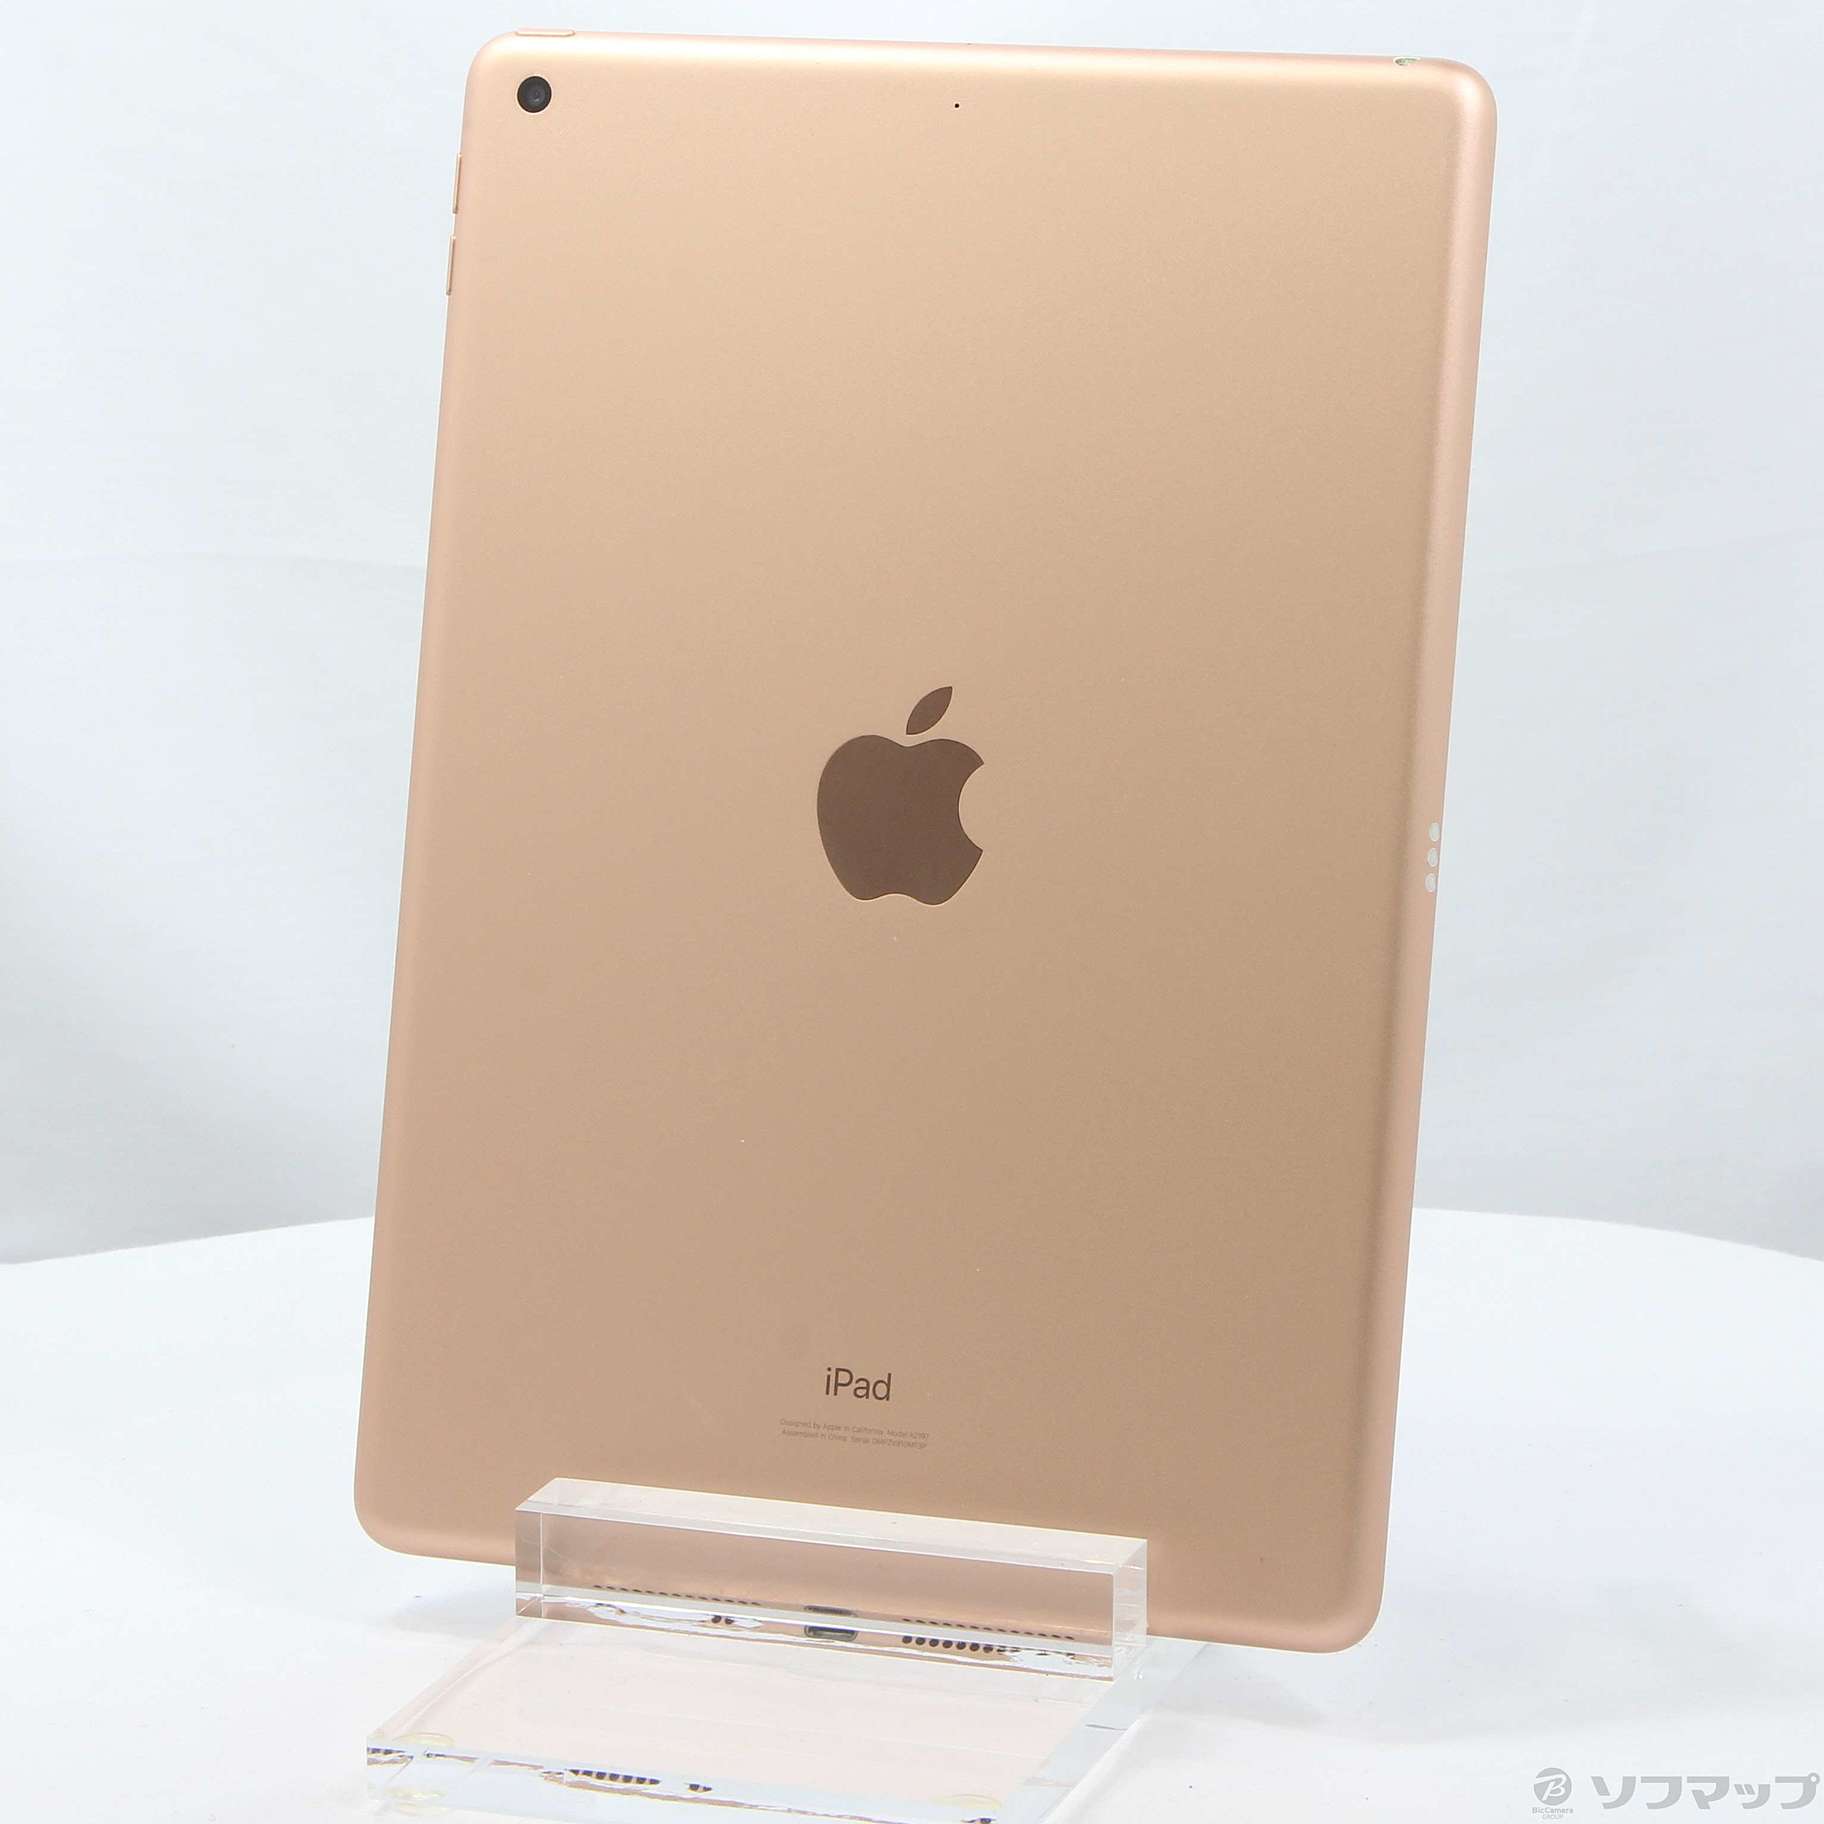 (中古)Apple iPad 第7世代 32GB ゴールド MW762J/A Wi-Fi(252-ud)